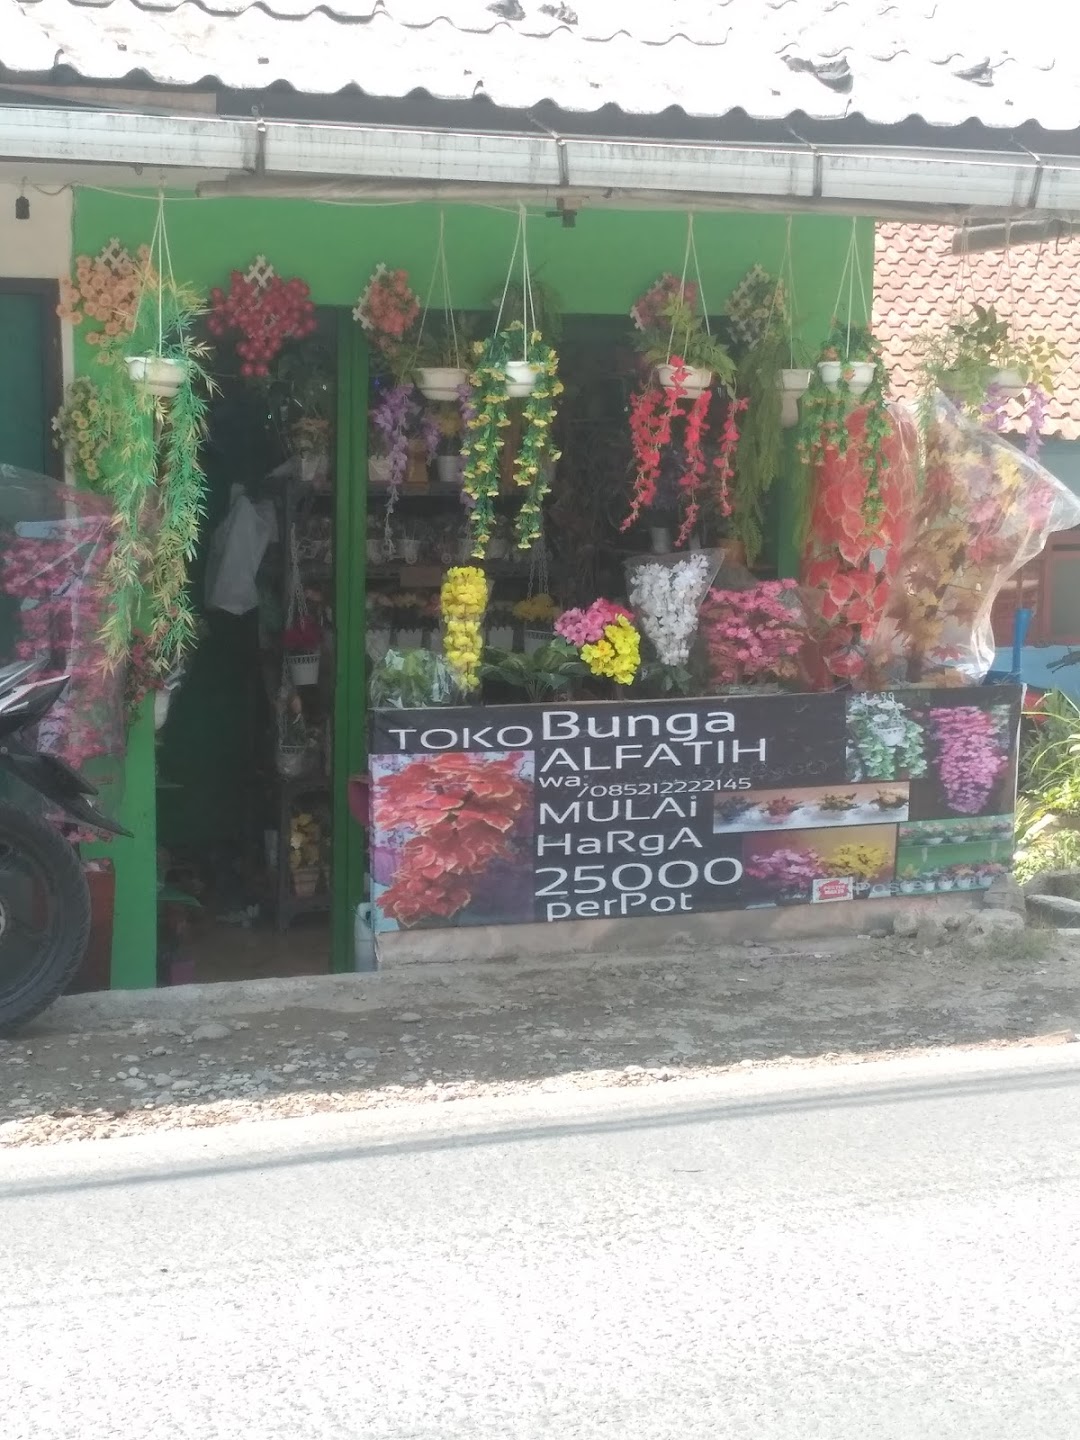 toko bunga alfatih